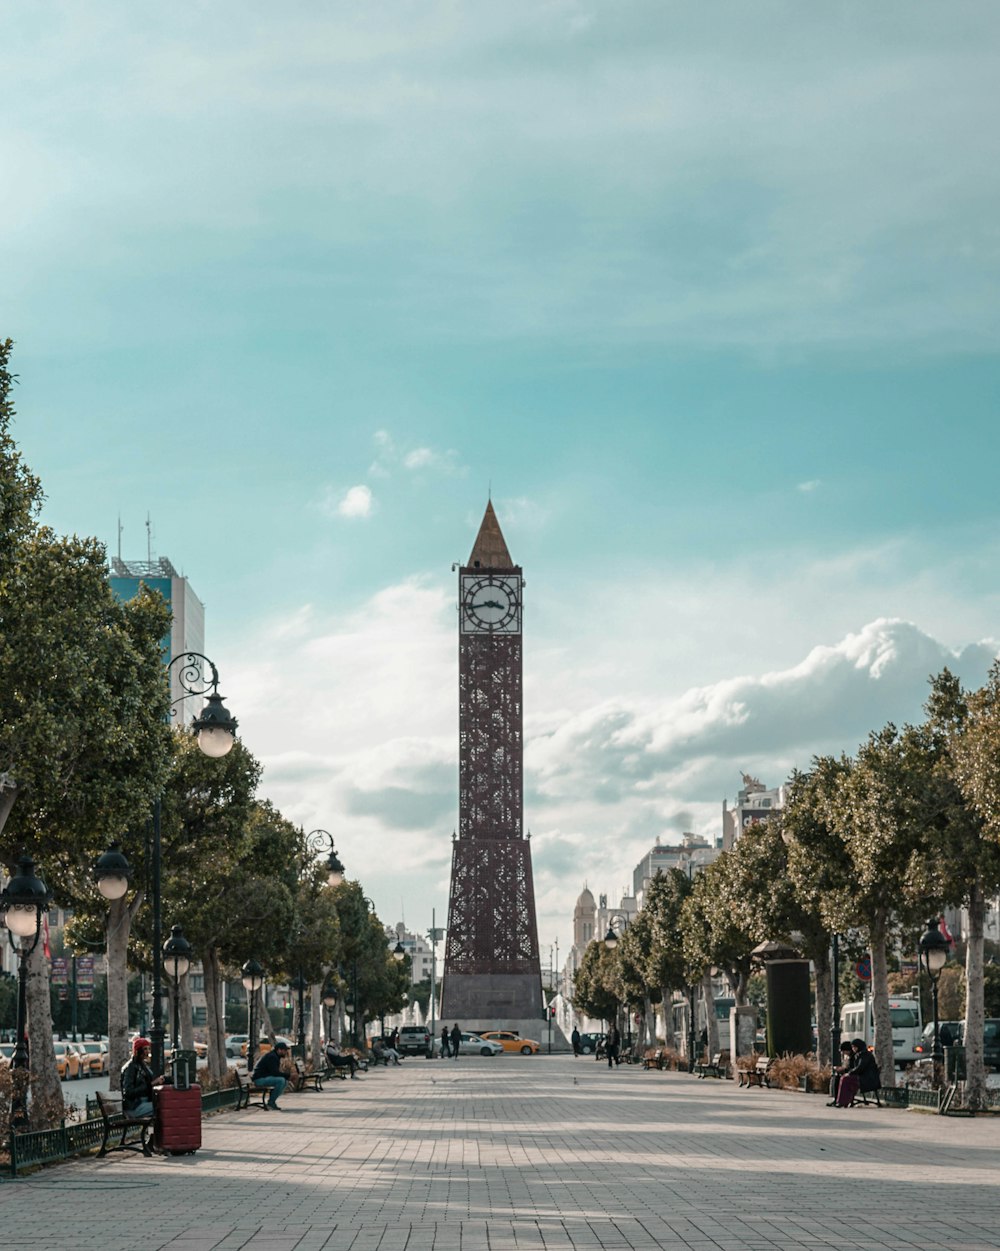 Una gran torre del reloj que se eleva sobre una calle de la ciudad